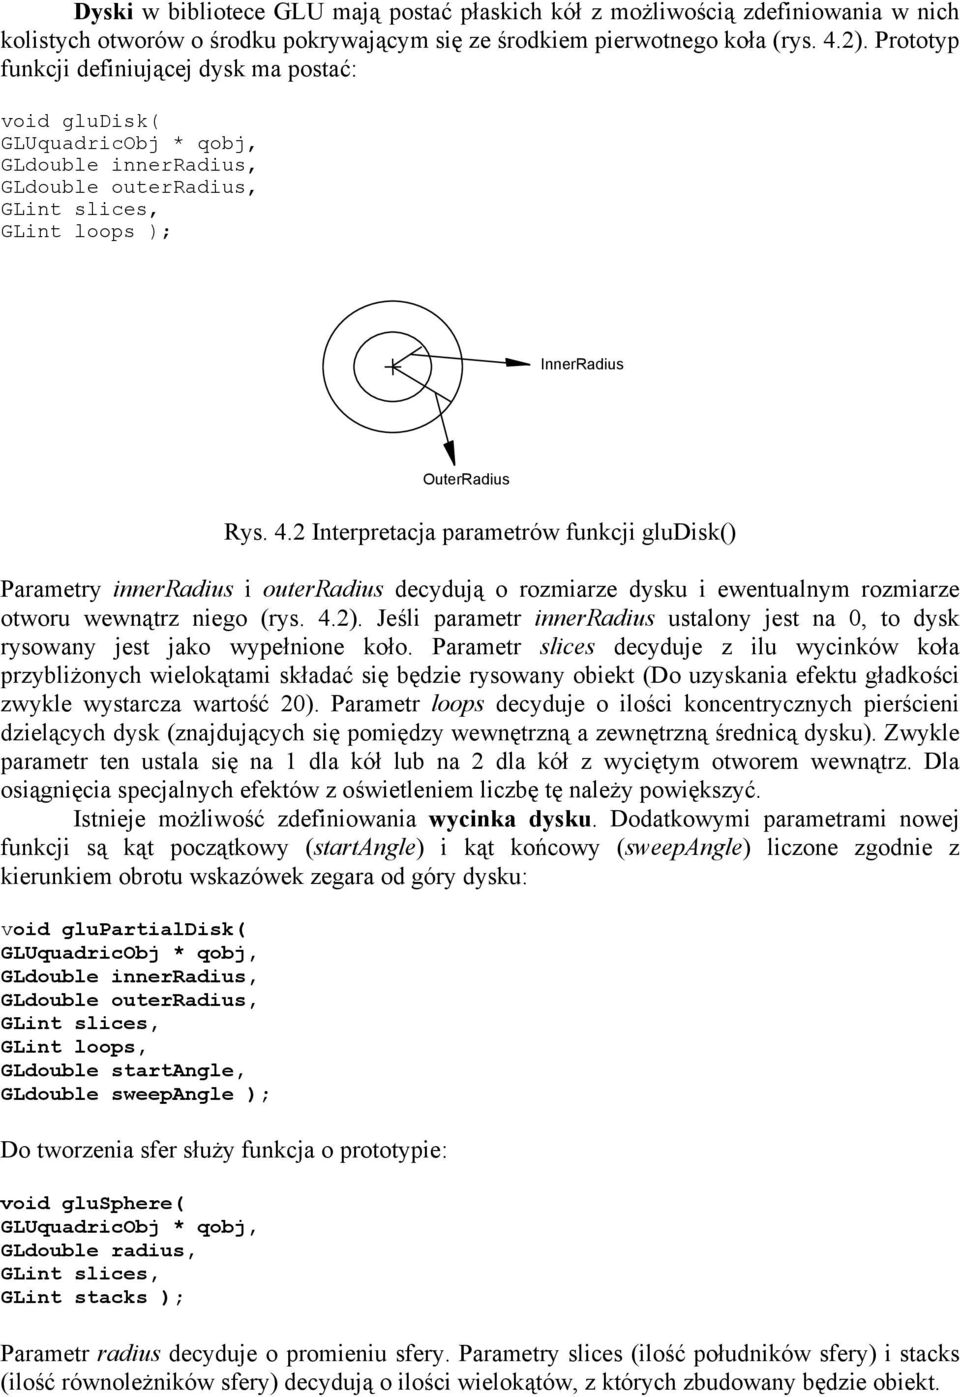 2 Interpretacja parametrów funkcji gludisk() Parametry innerradius i outerradius decydują o rozmiarze dysku i ewentualnym rozmiarze otworu wewnątrz niego (rys. 4.2).